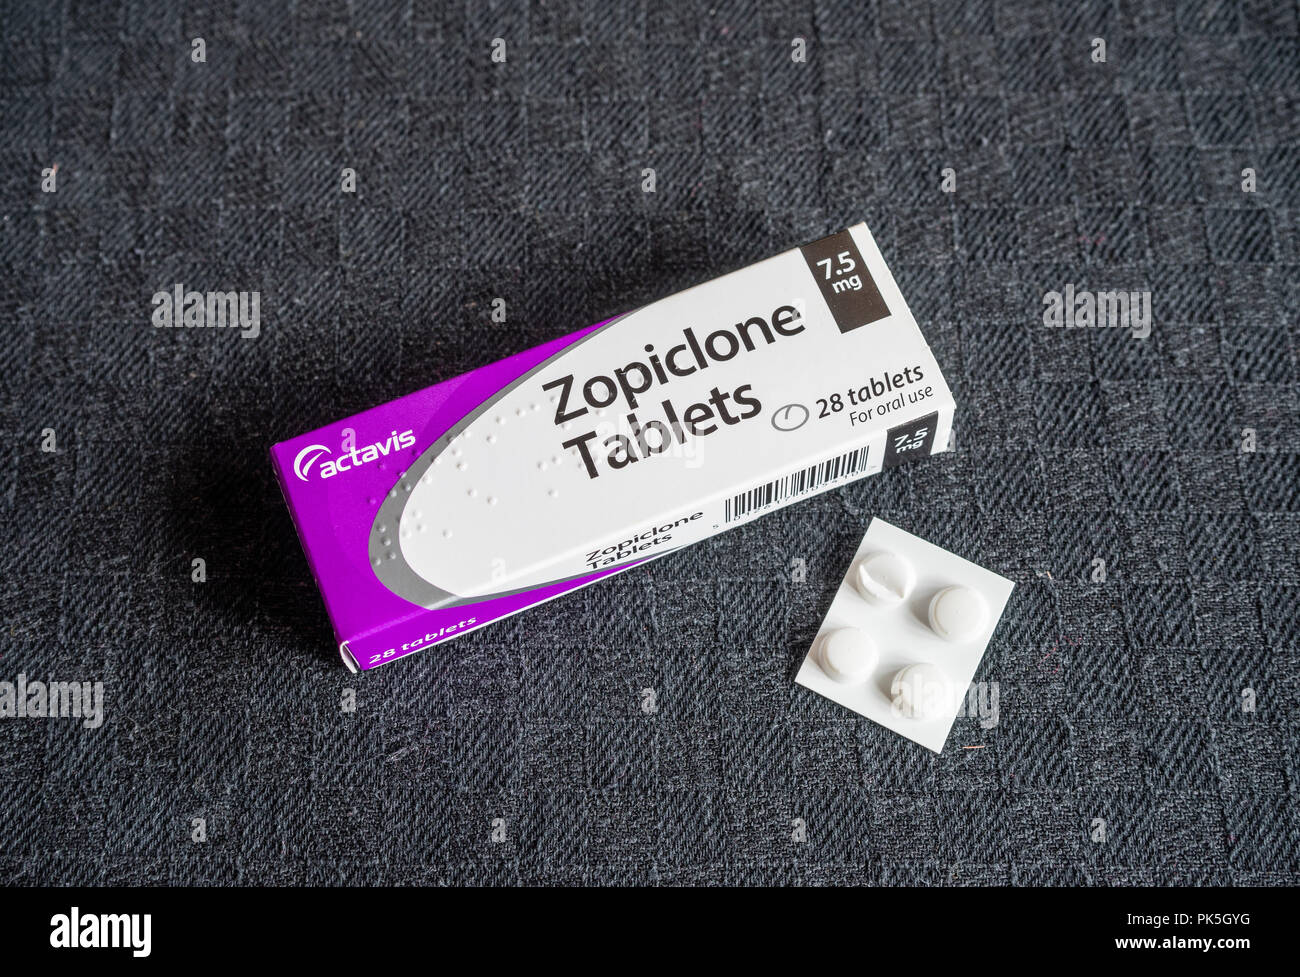 DIES IST Ein LAGERFOTO - eine Schachtel / Packung mit 28 x 7,5 mg Zopiclon verschreibungspflichtigen Schlaftabletten vor schwarzem Hintergrund Stockfoto